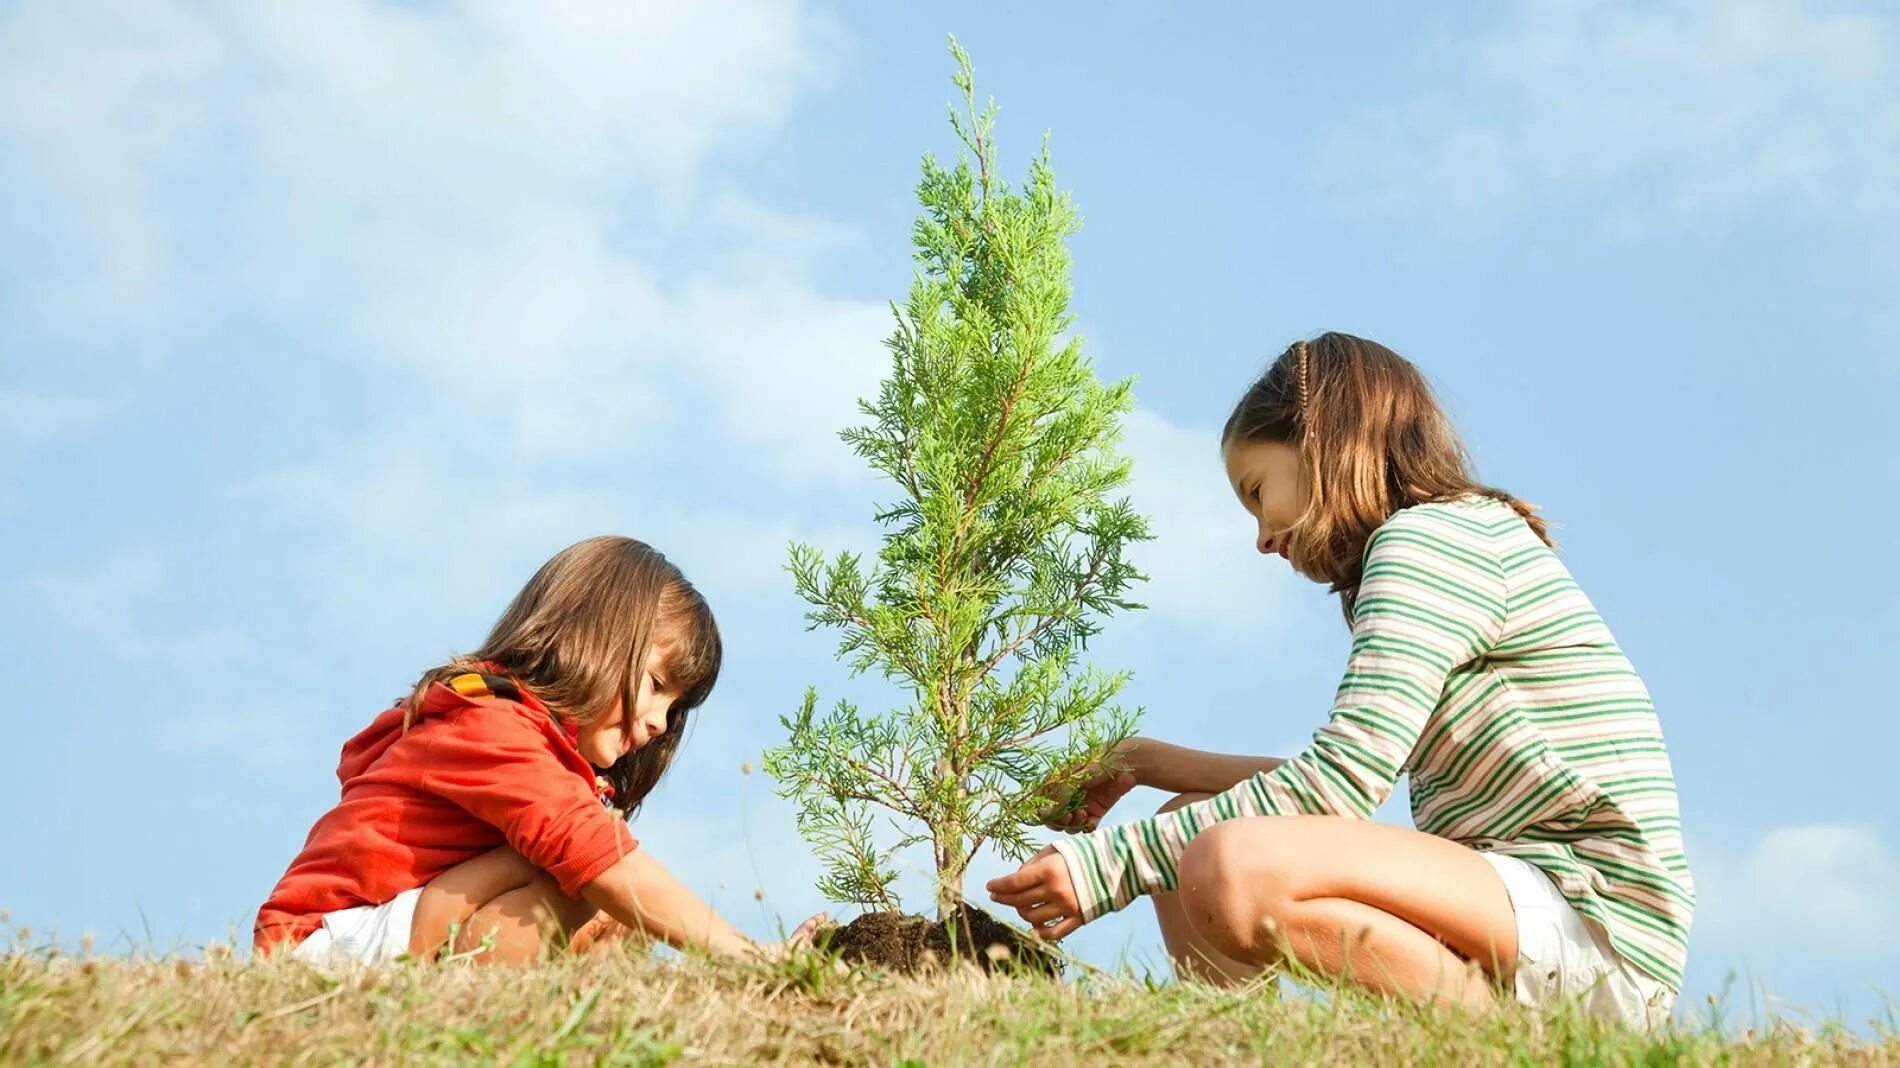 Забота о растении. Дети и природа. Человек и природа. Детям об экологии. Гармония человека и природы.